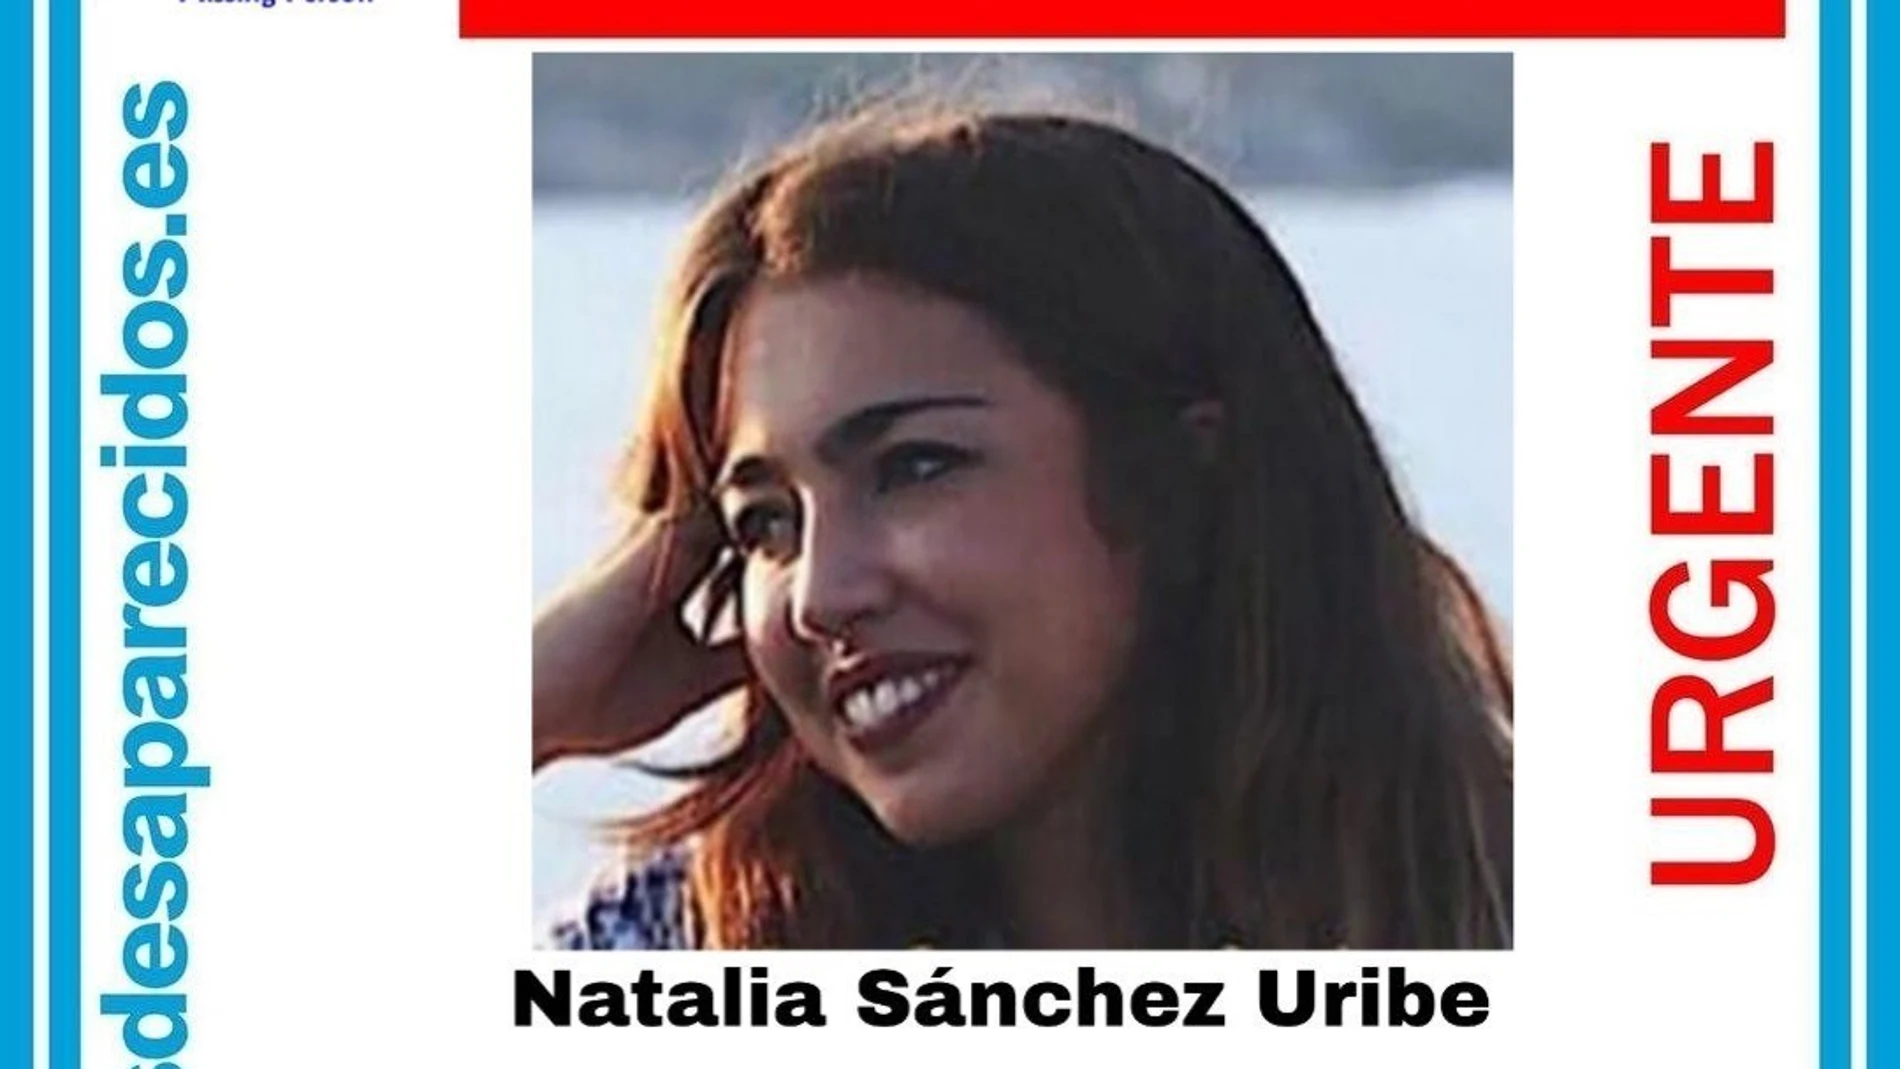 Cartel de búsqueda de la desaparecida Natalia Sánchez Uribe / Foto: EP